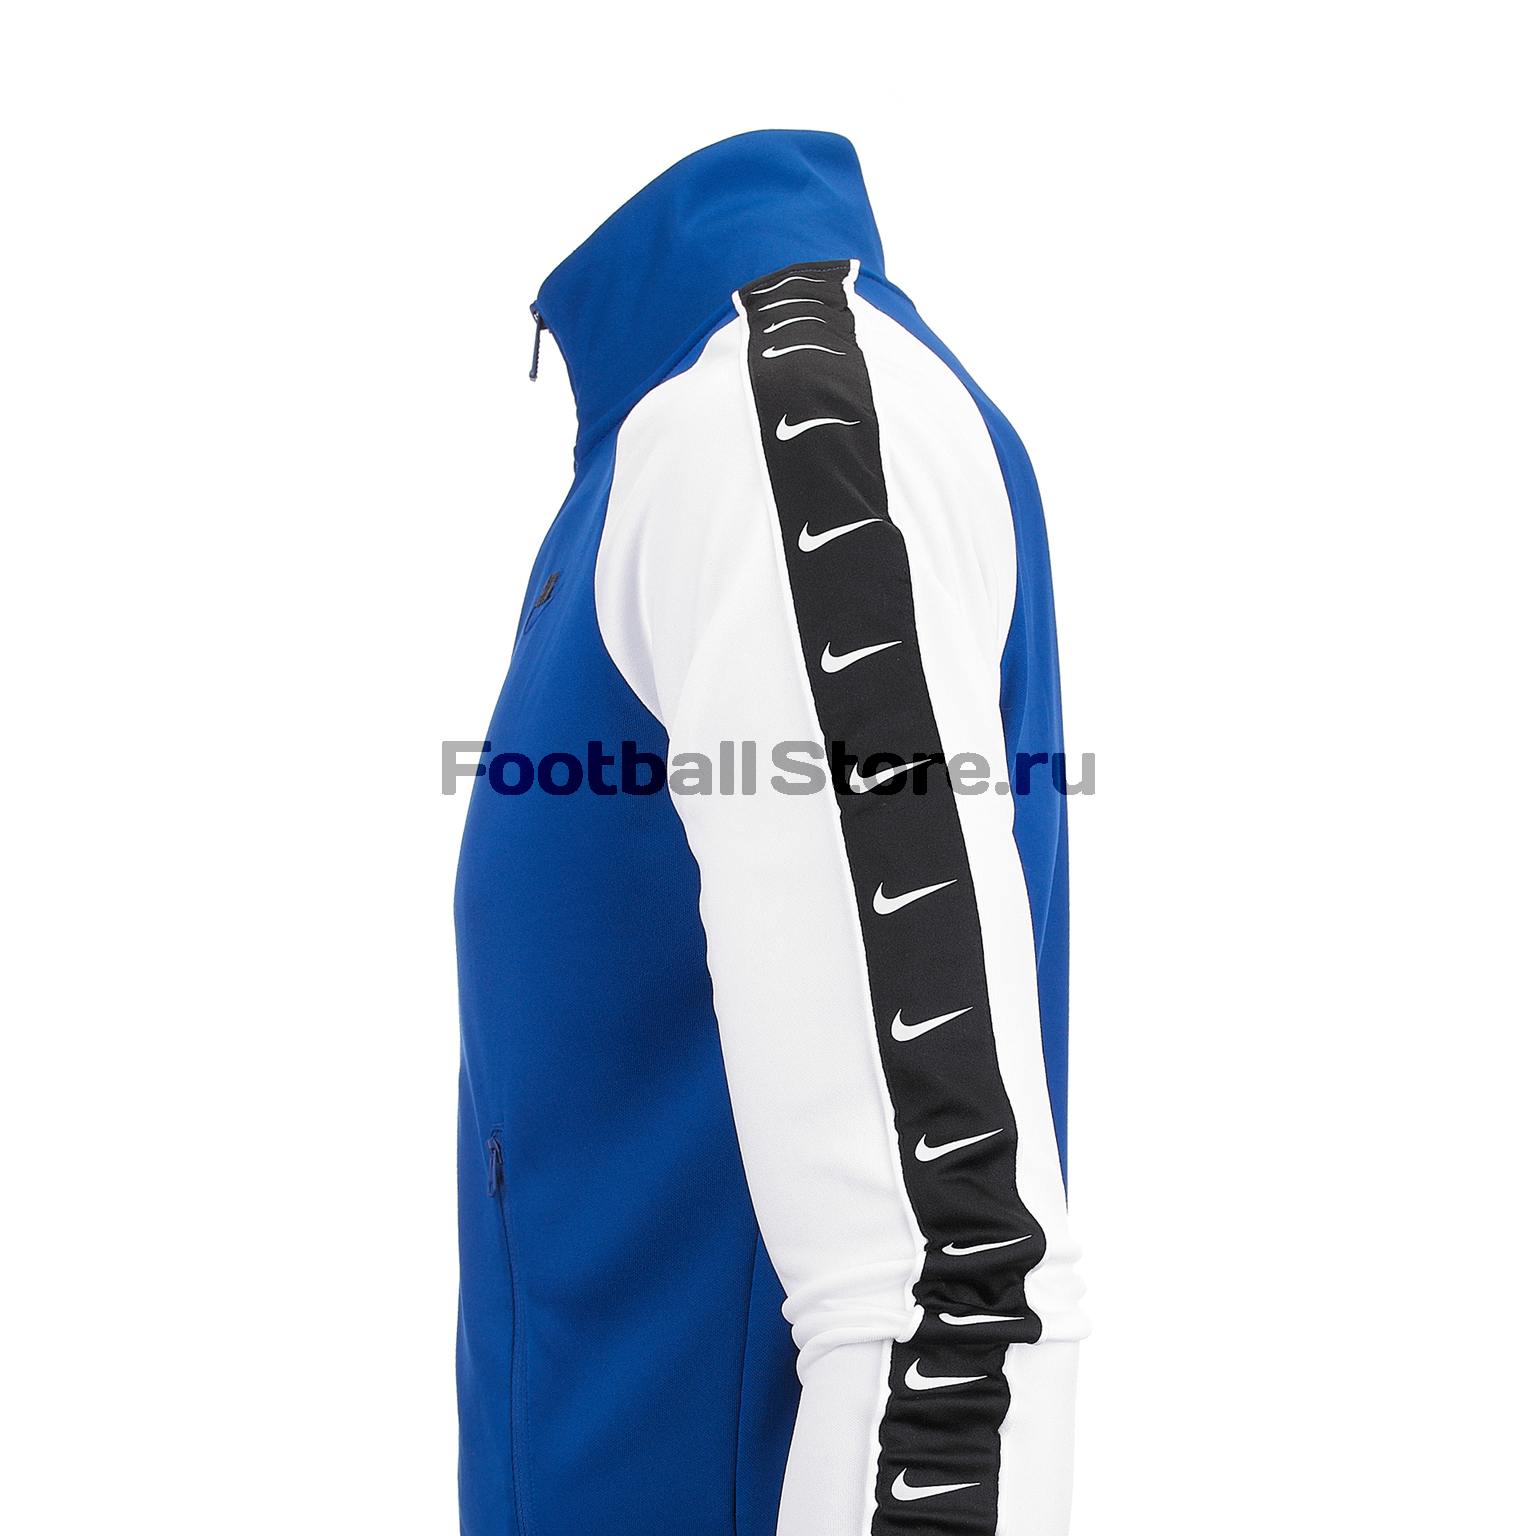 Олимпийка Nike NSW HBR Jacket AR3139-438